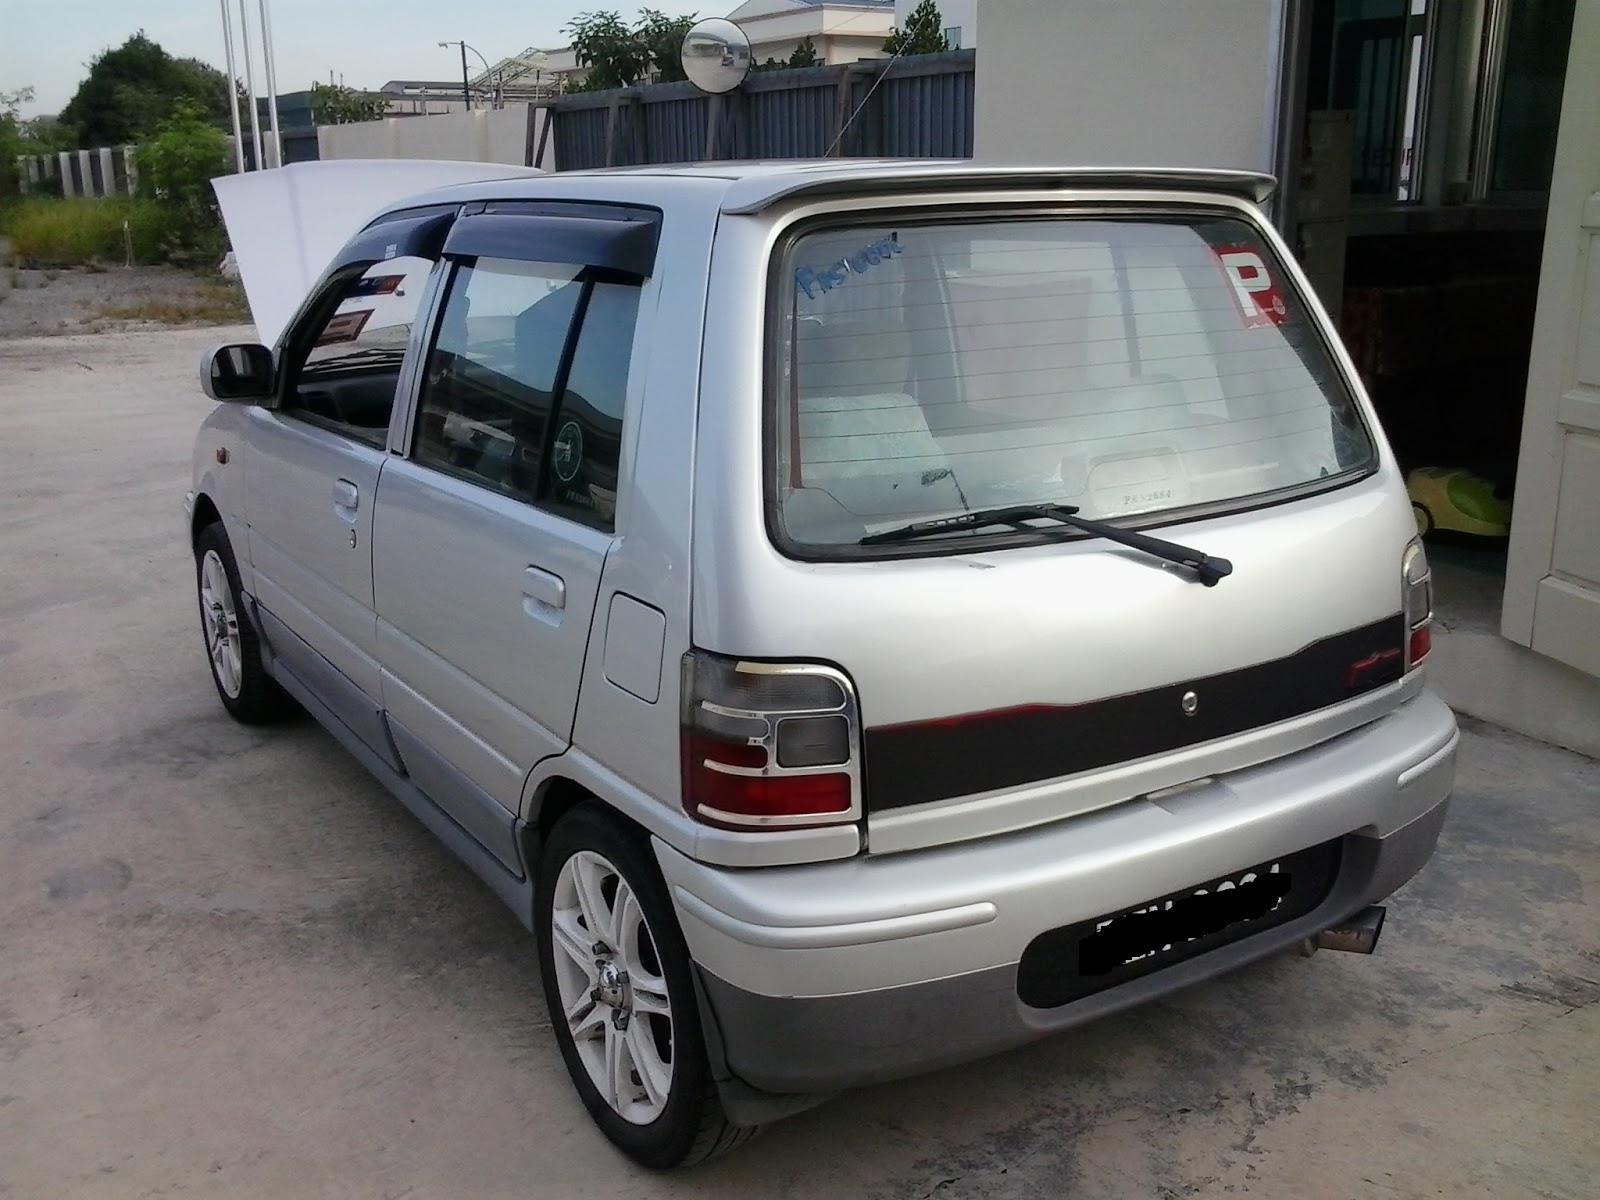 Perodua car for rent - Pro-Niaga marketplace